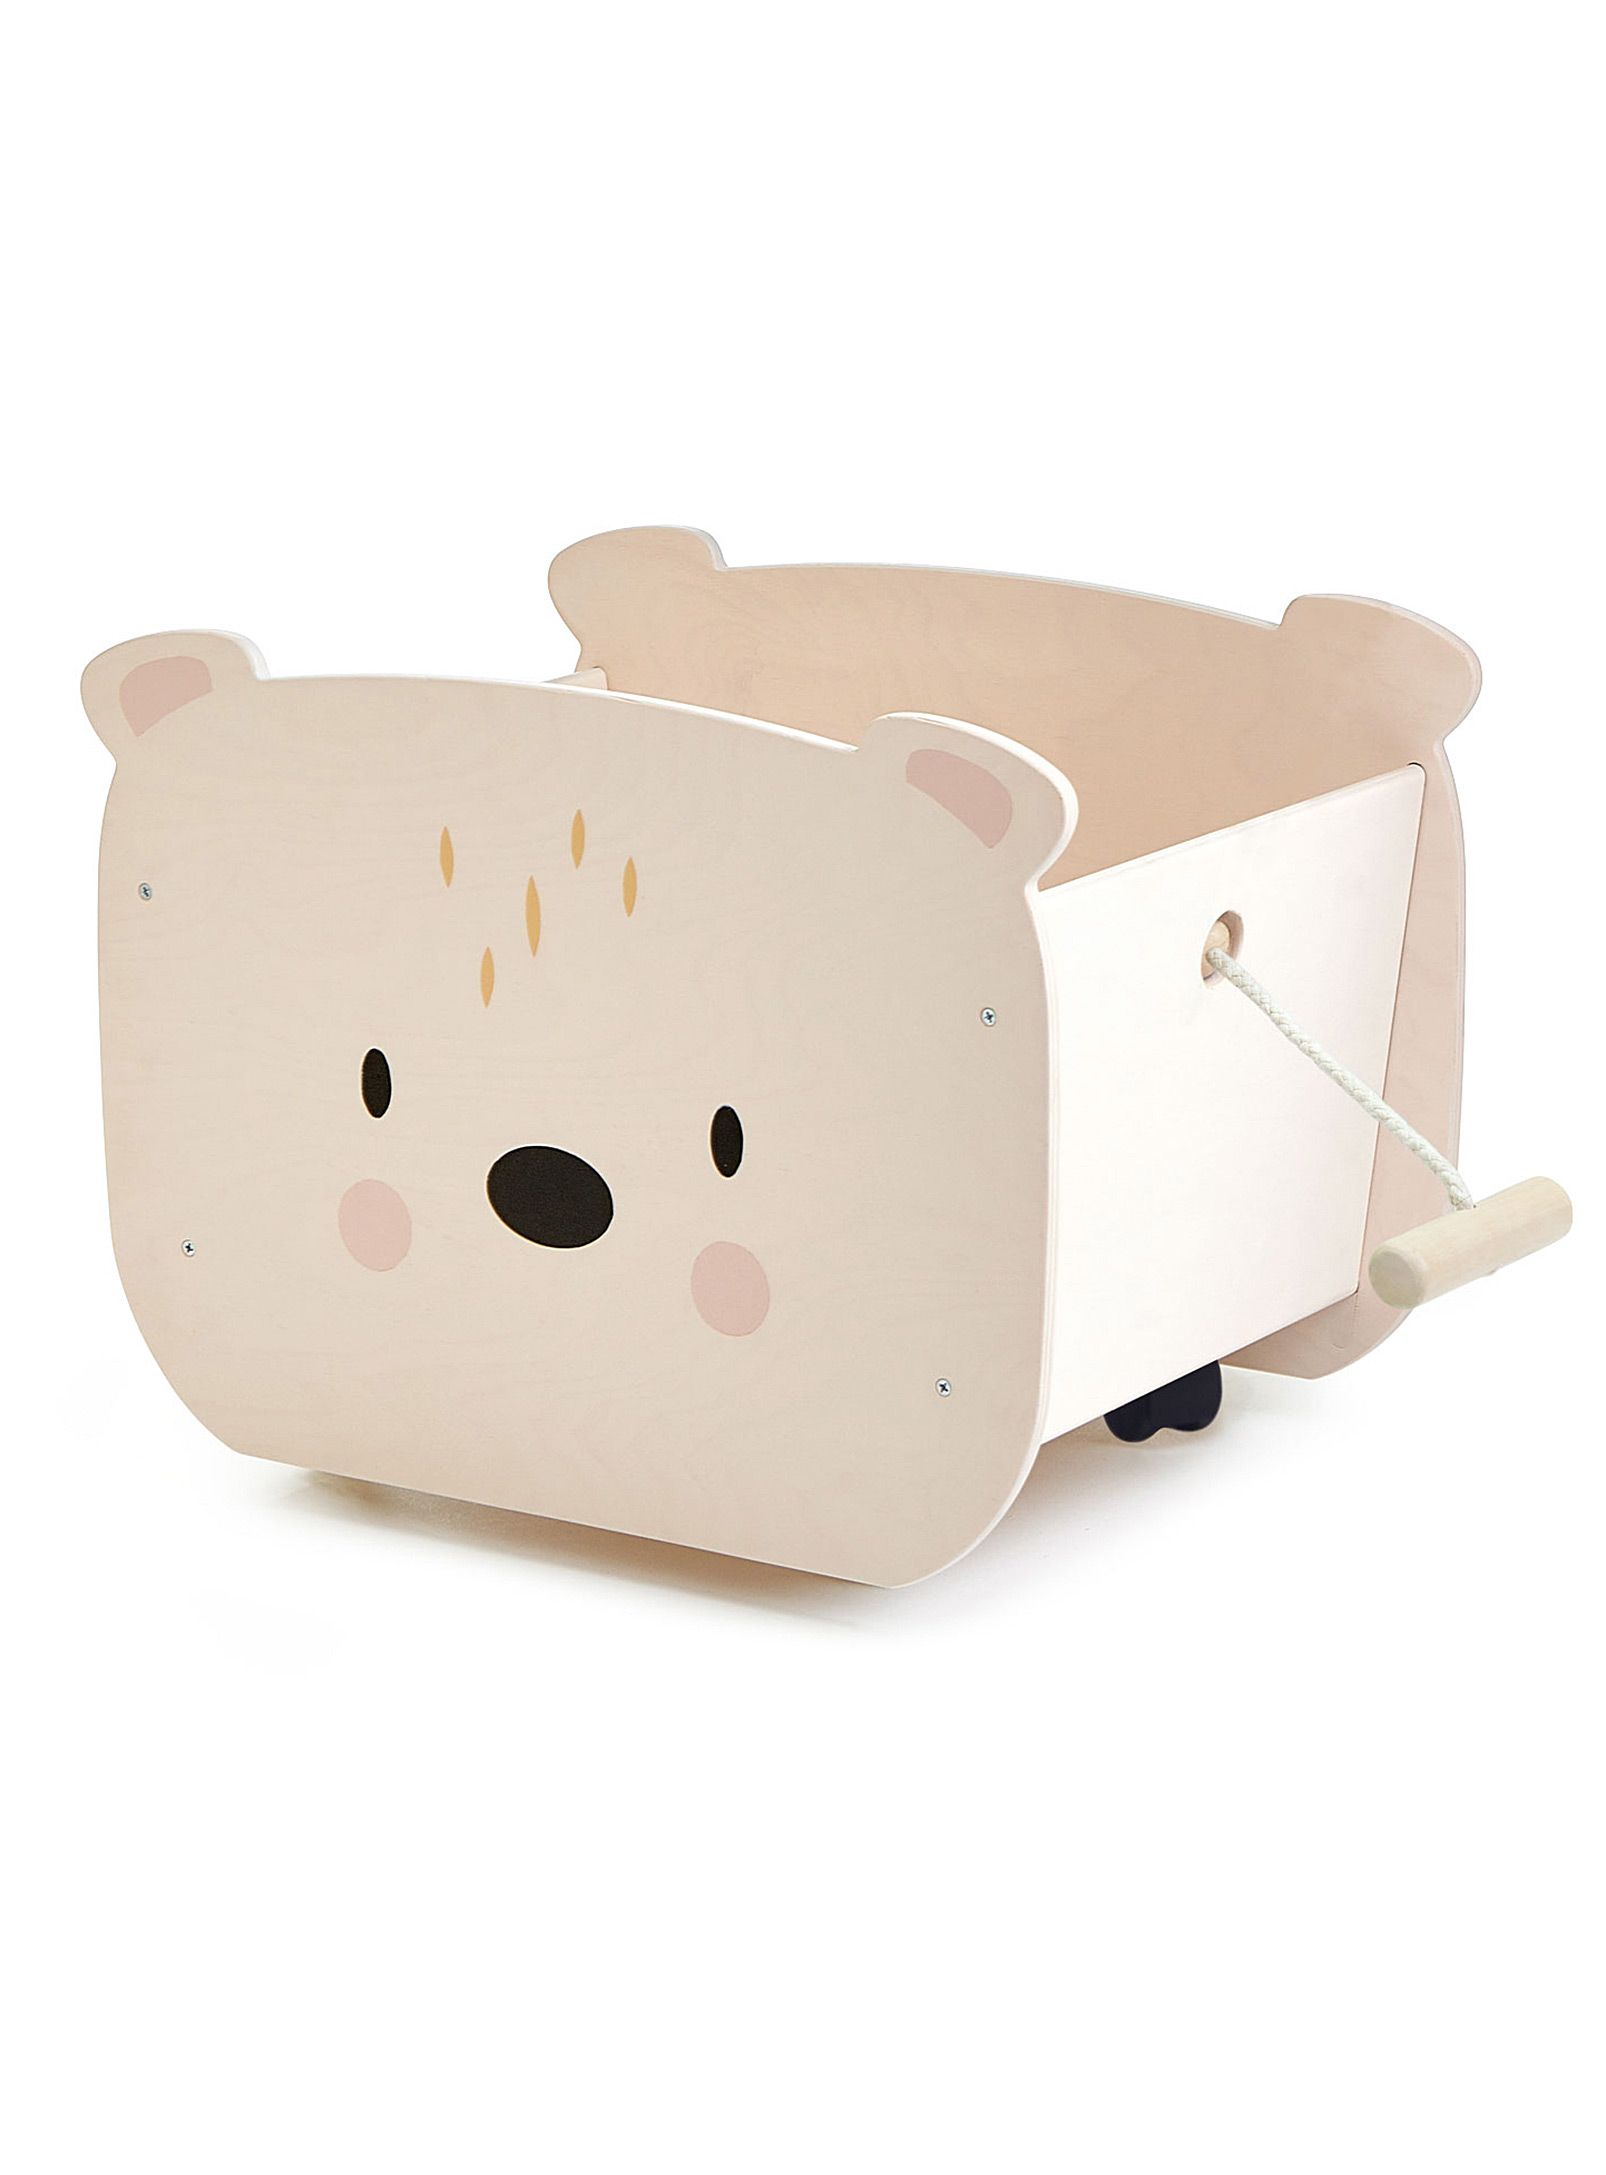 Tender Leaf Toys - Bear cub toy box with wheels